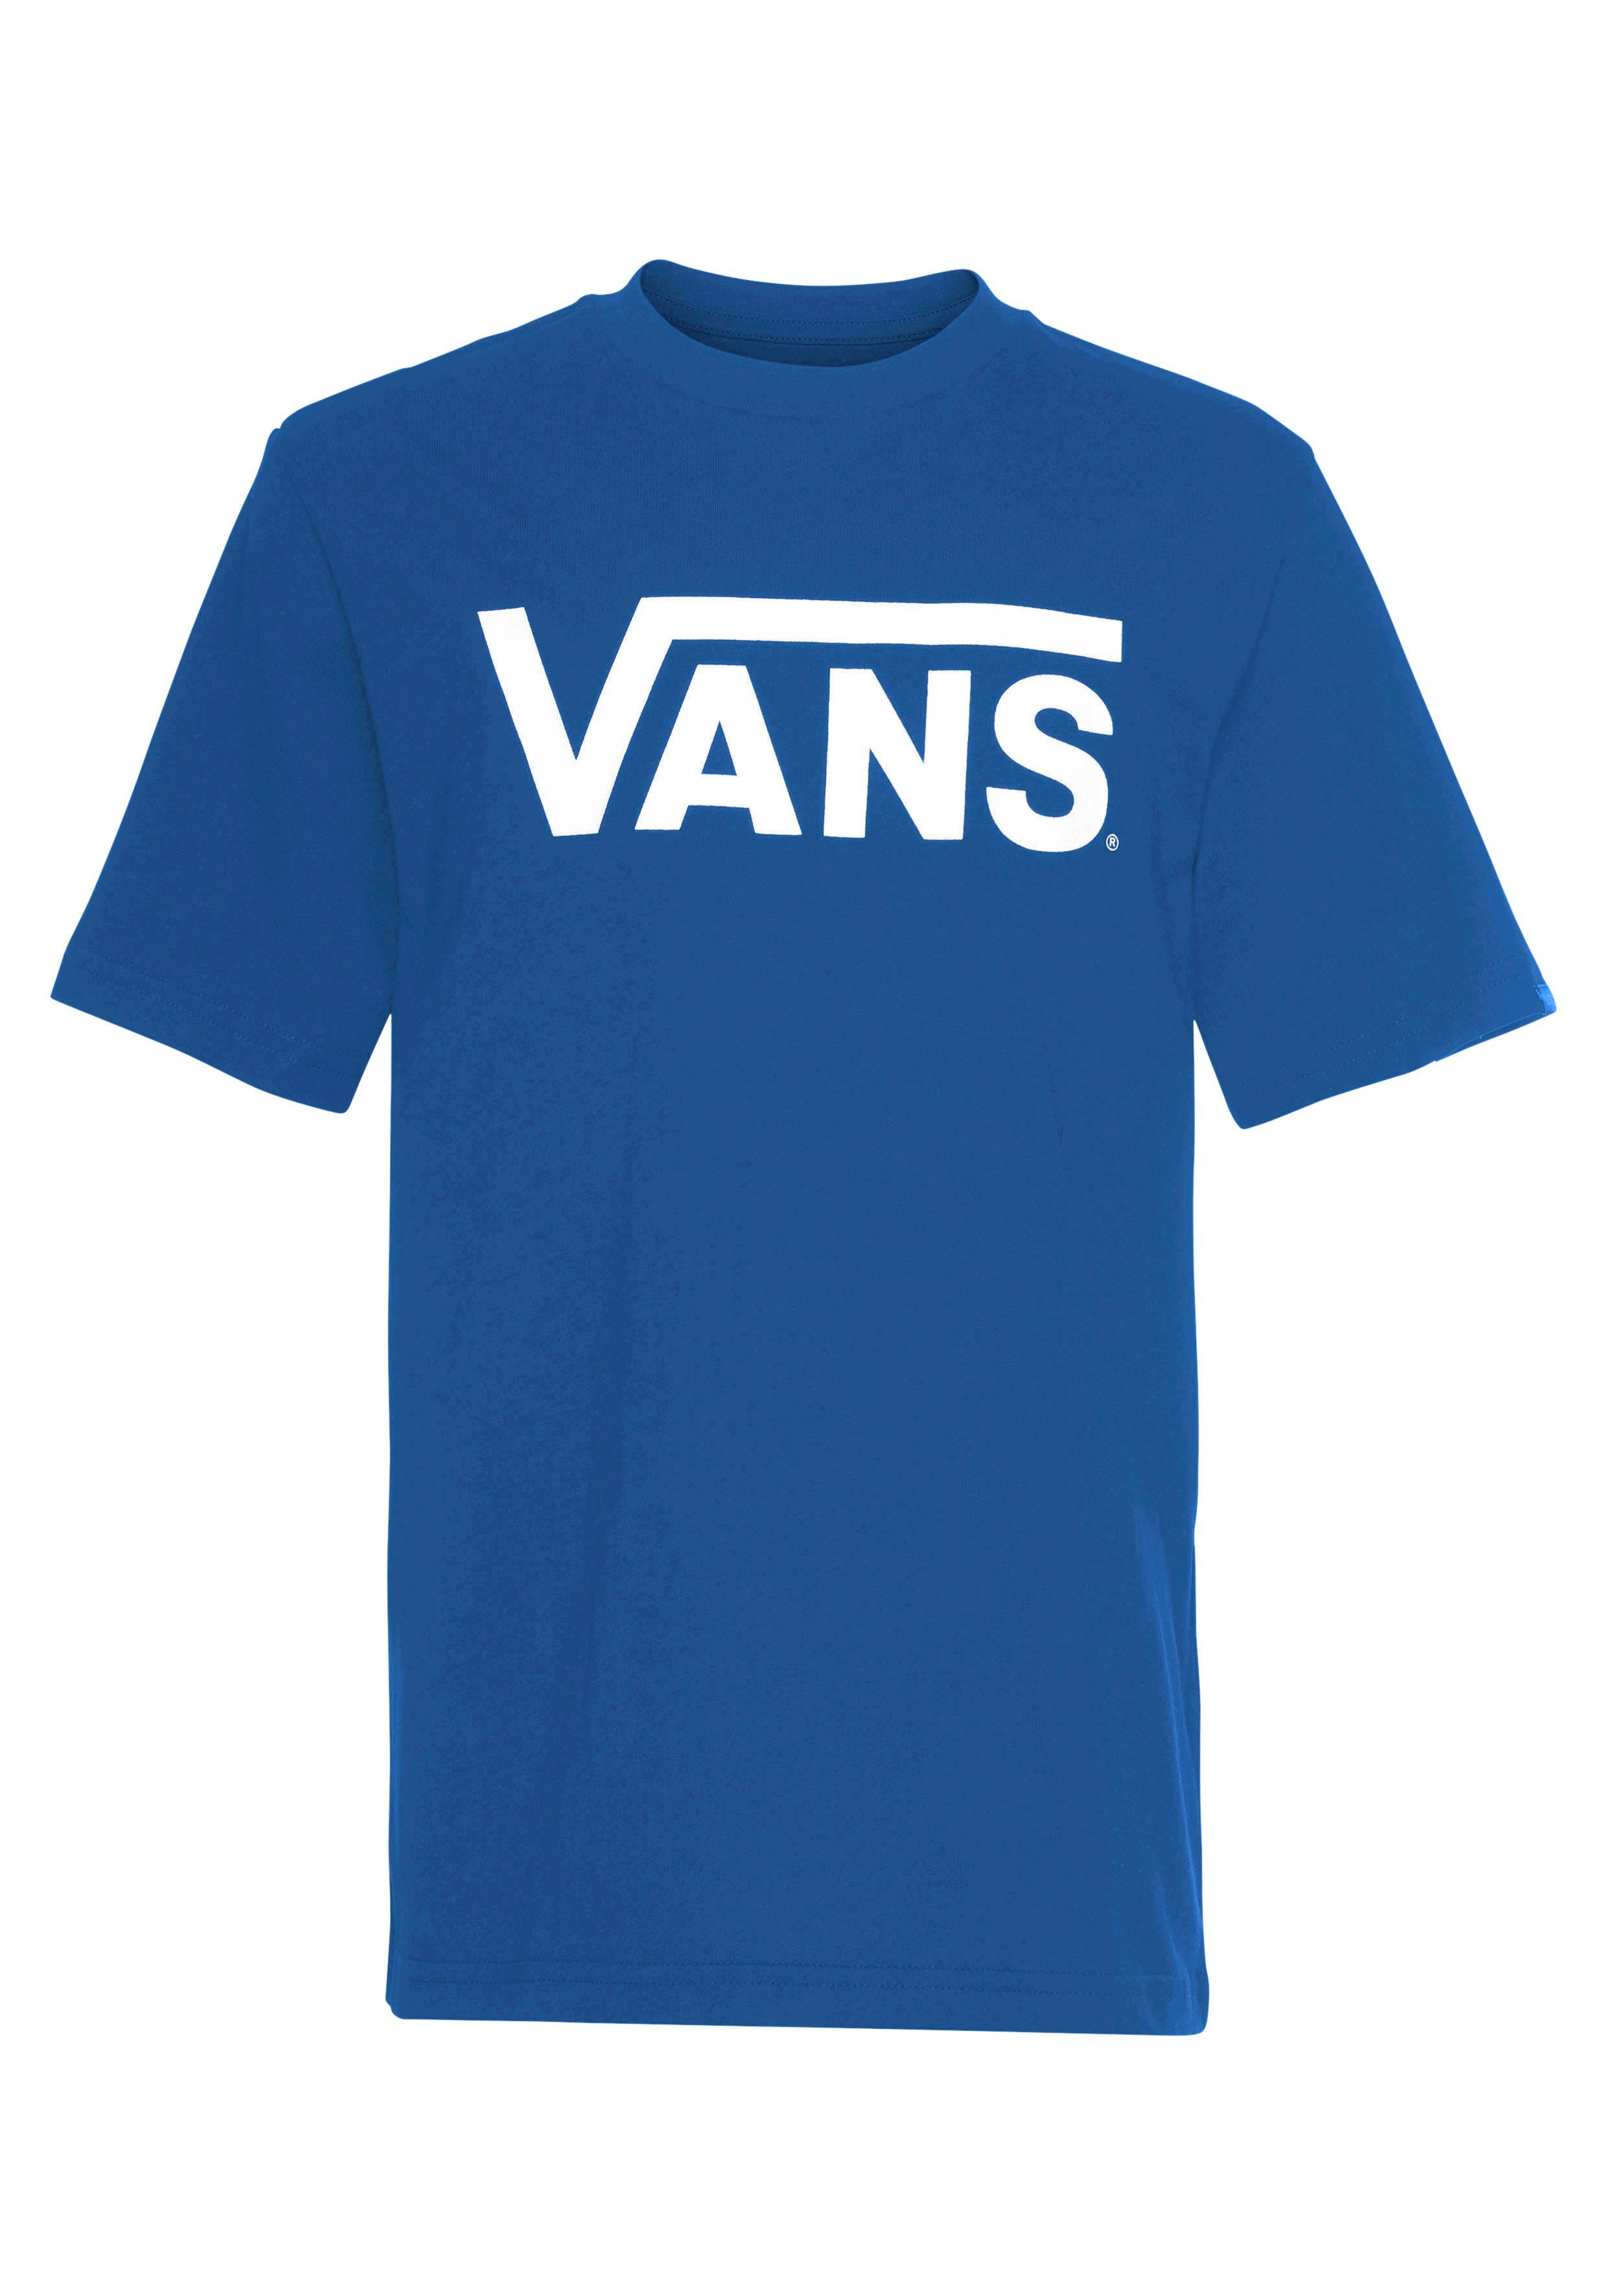 Vans T-Shirt VANS BOYS BLUE-WHITE CLASSIC TRUE